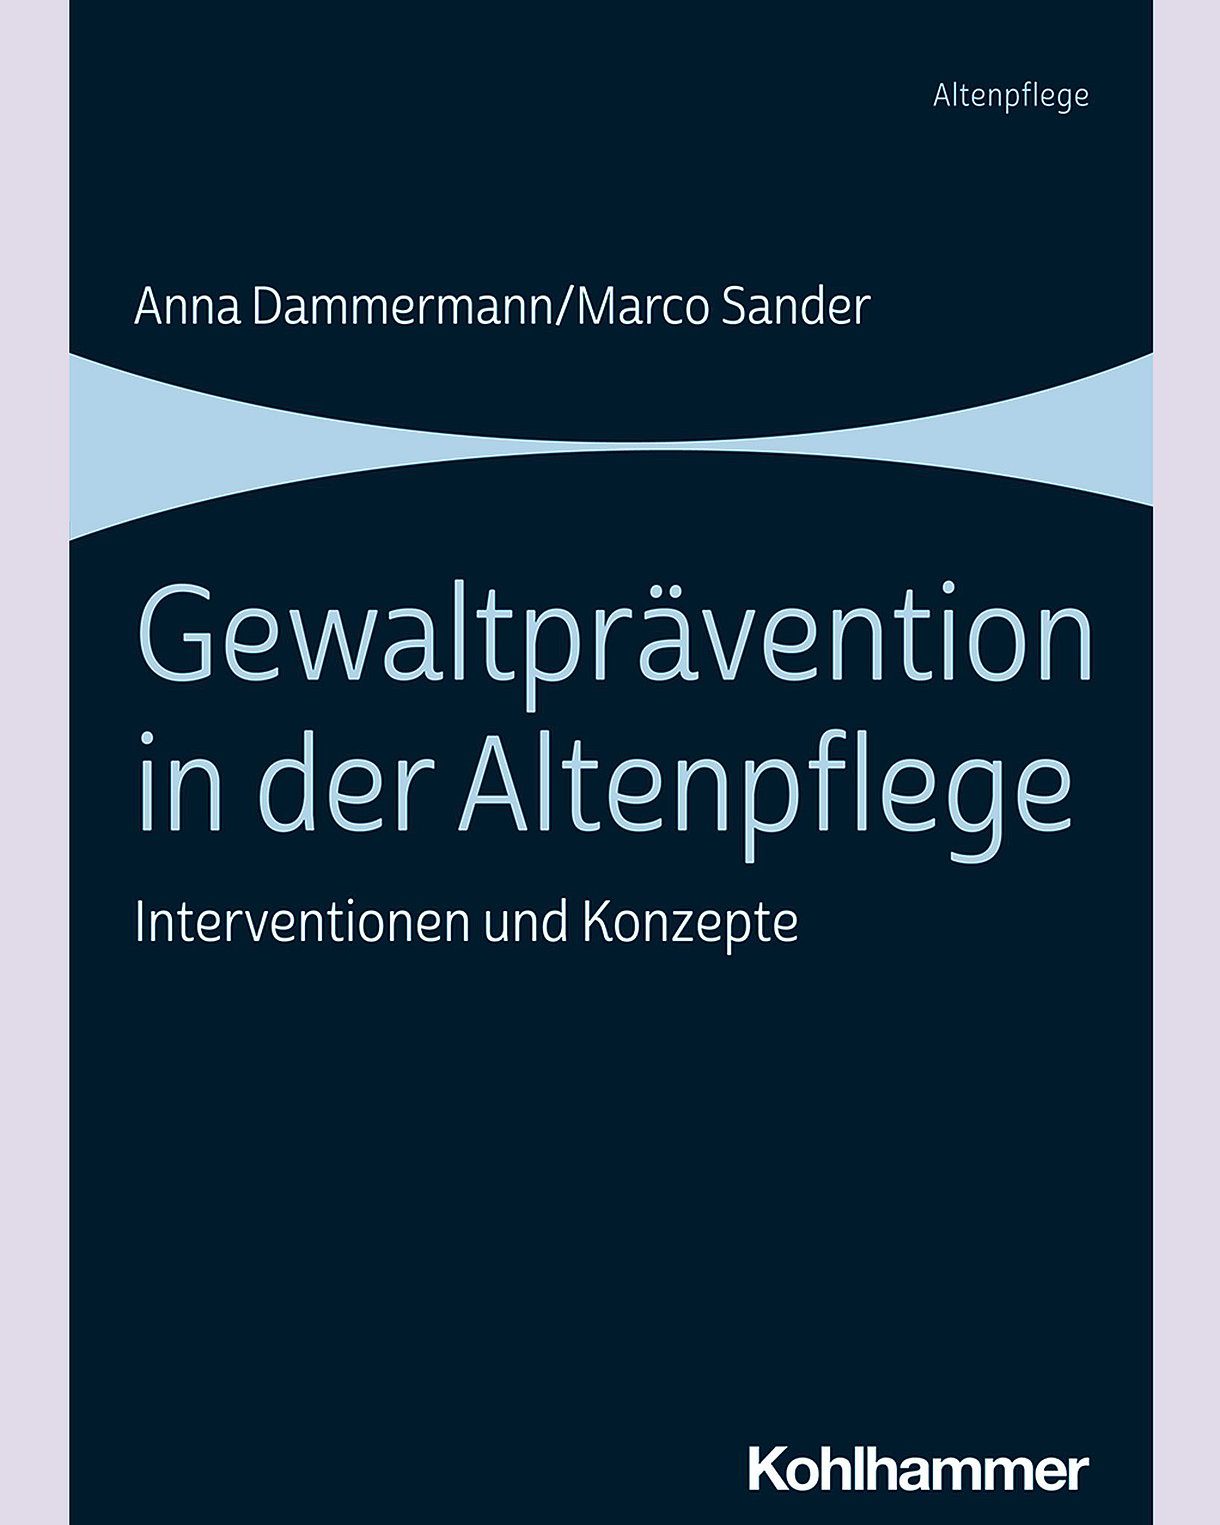 Foto: Buchcover: Anna Dammermann, Marco Sander: Gewaltprävention in der Pflege. Interventionen und Konzepte. Stuttgart, Verlag Kohlhammer.